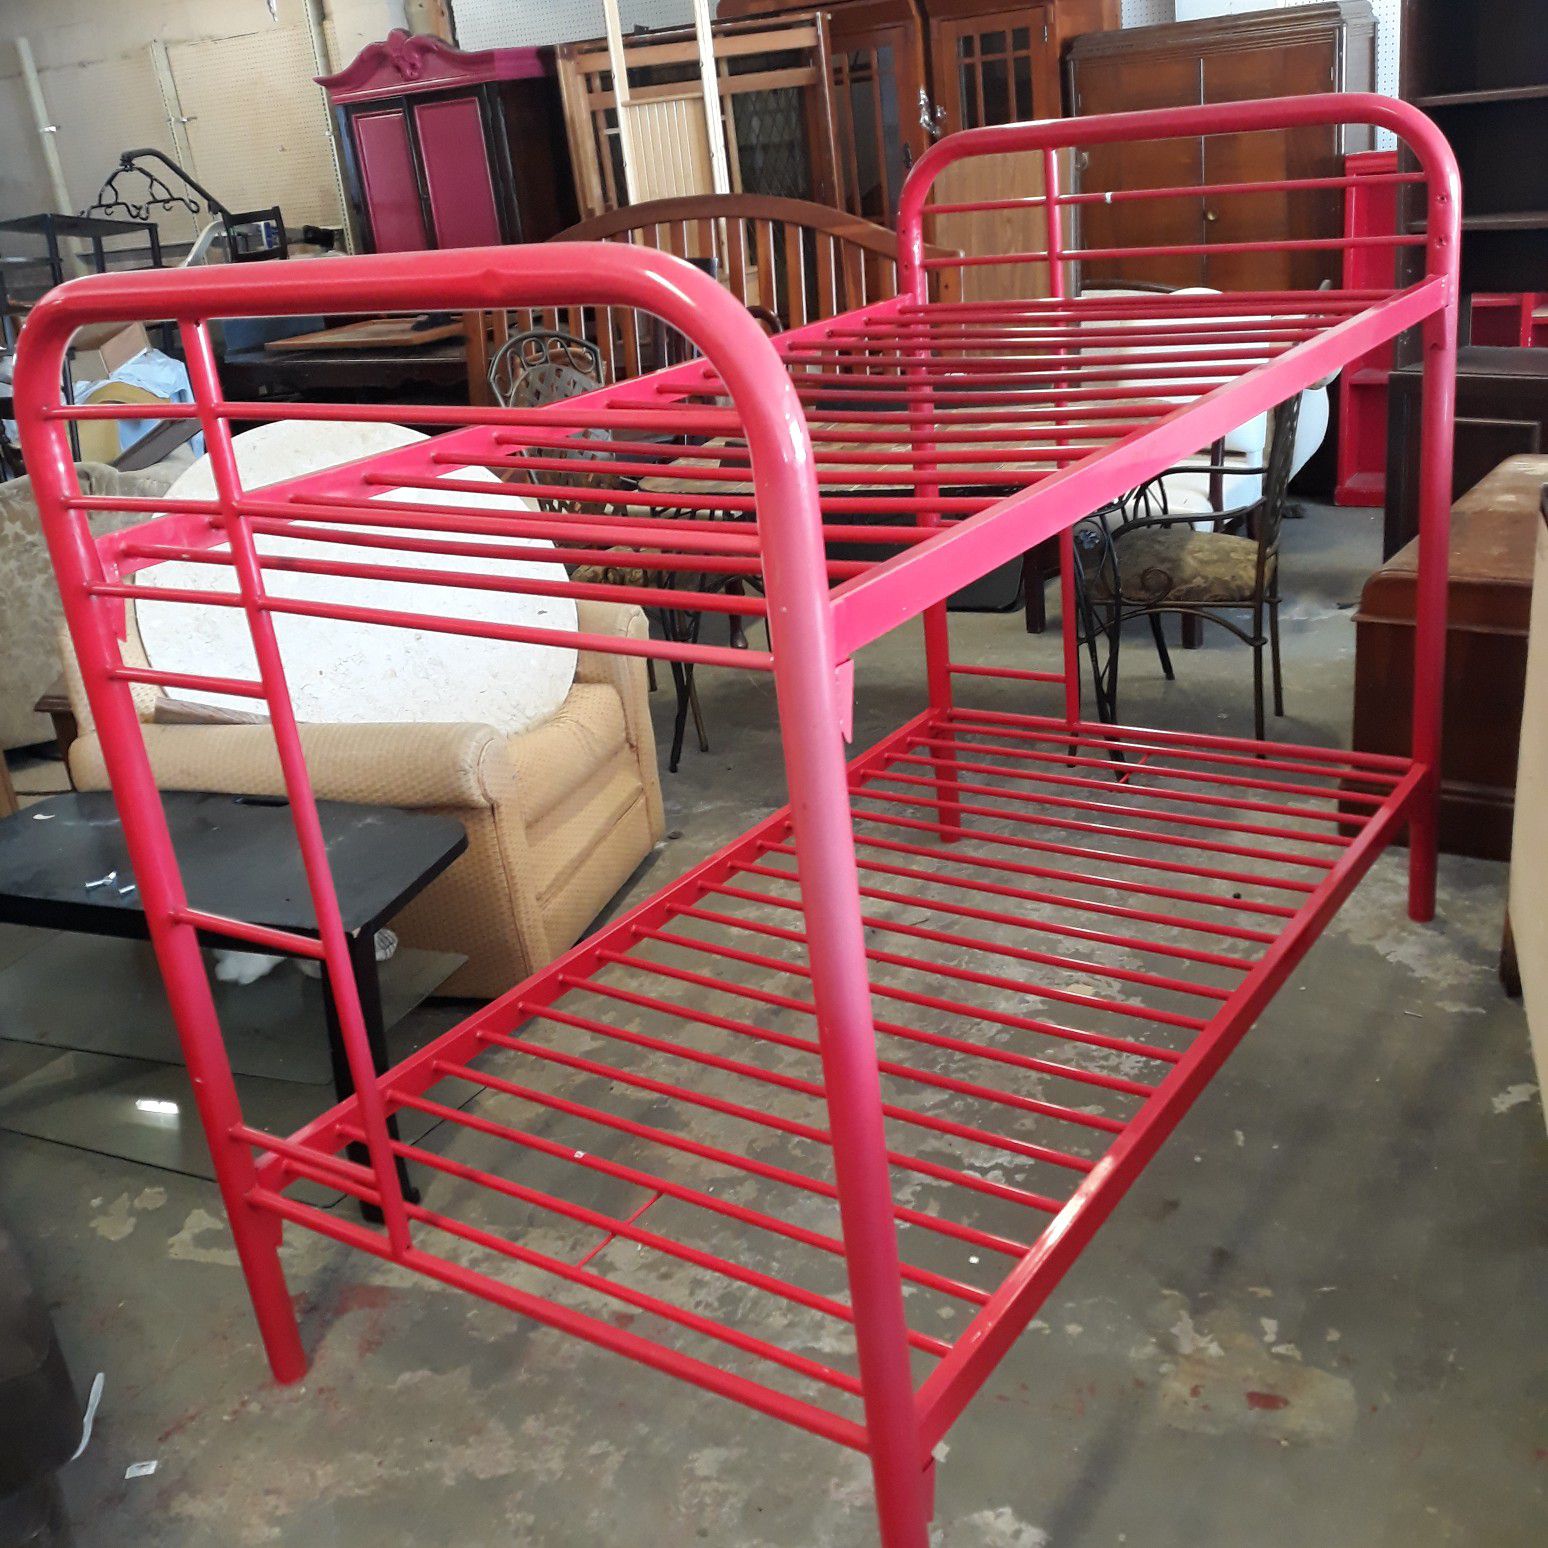 Bunk bed frame